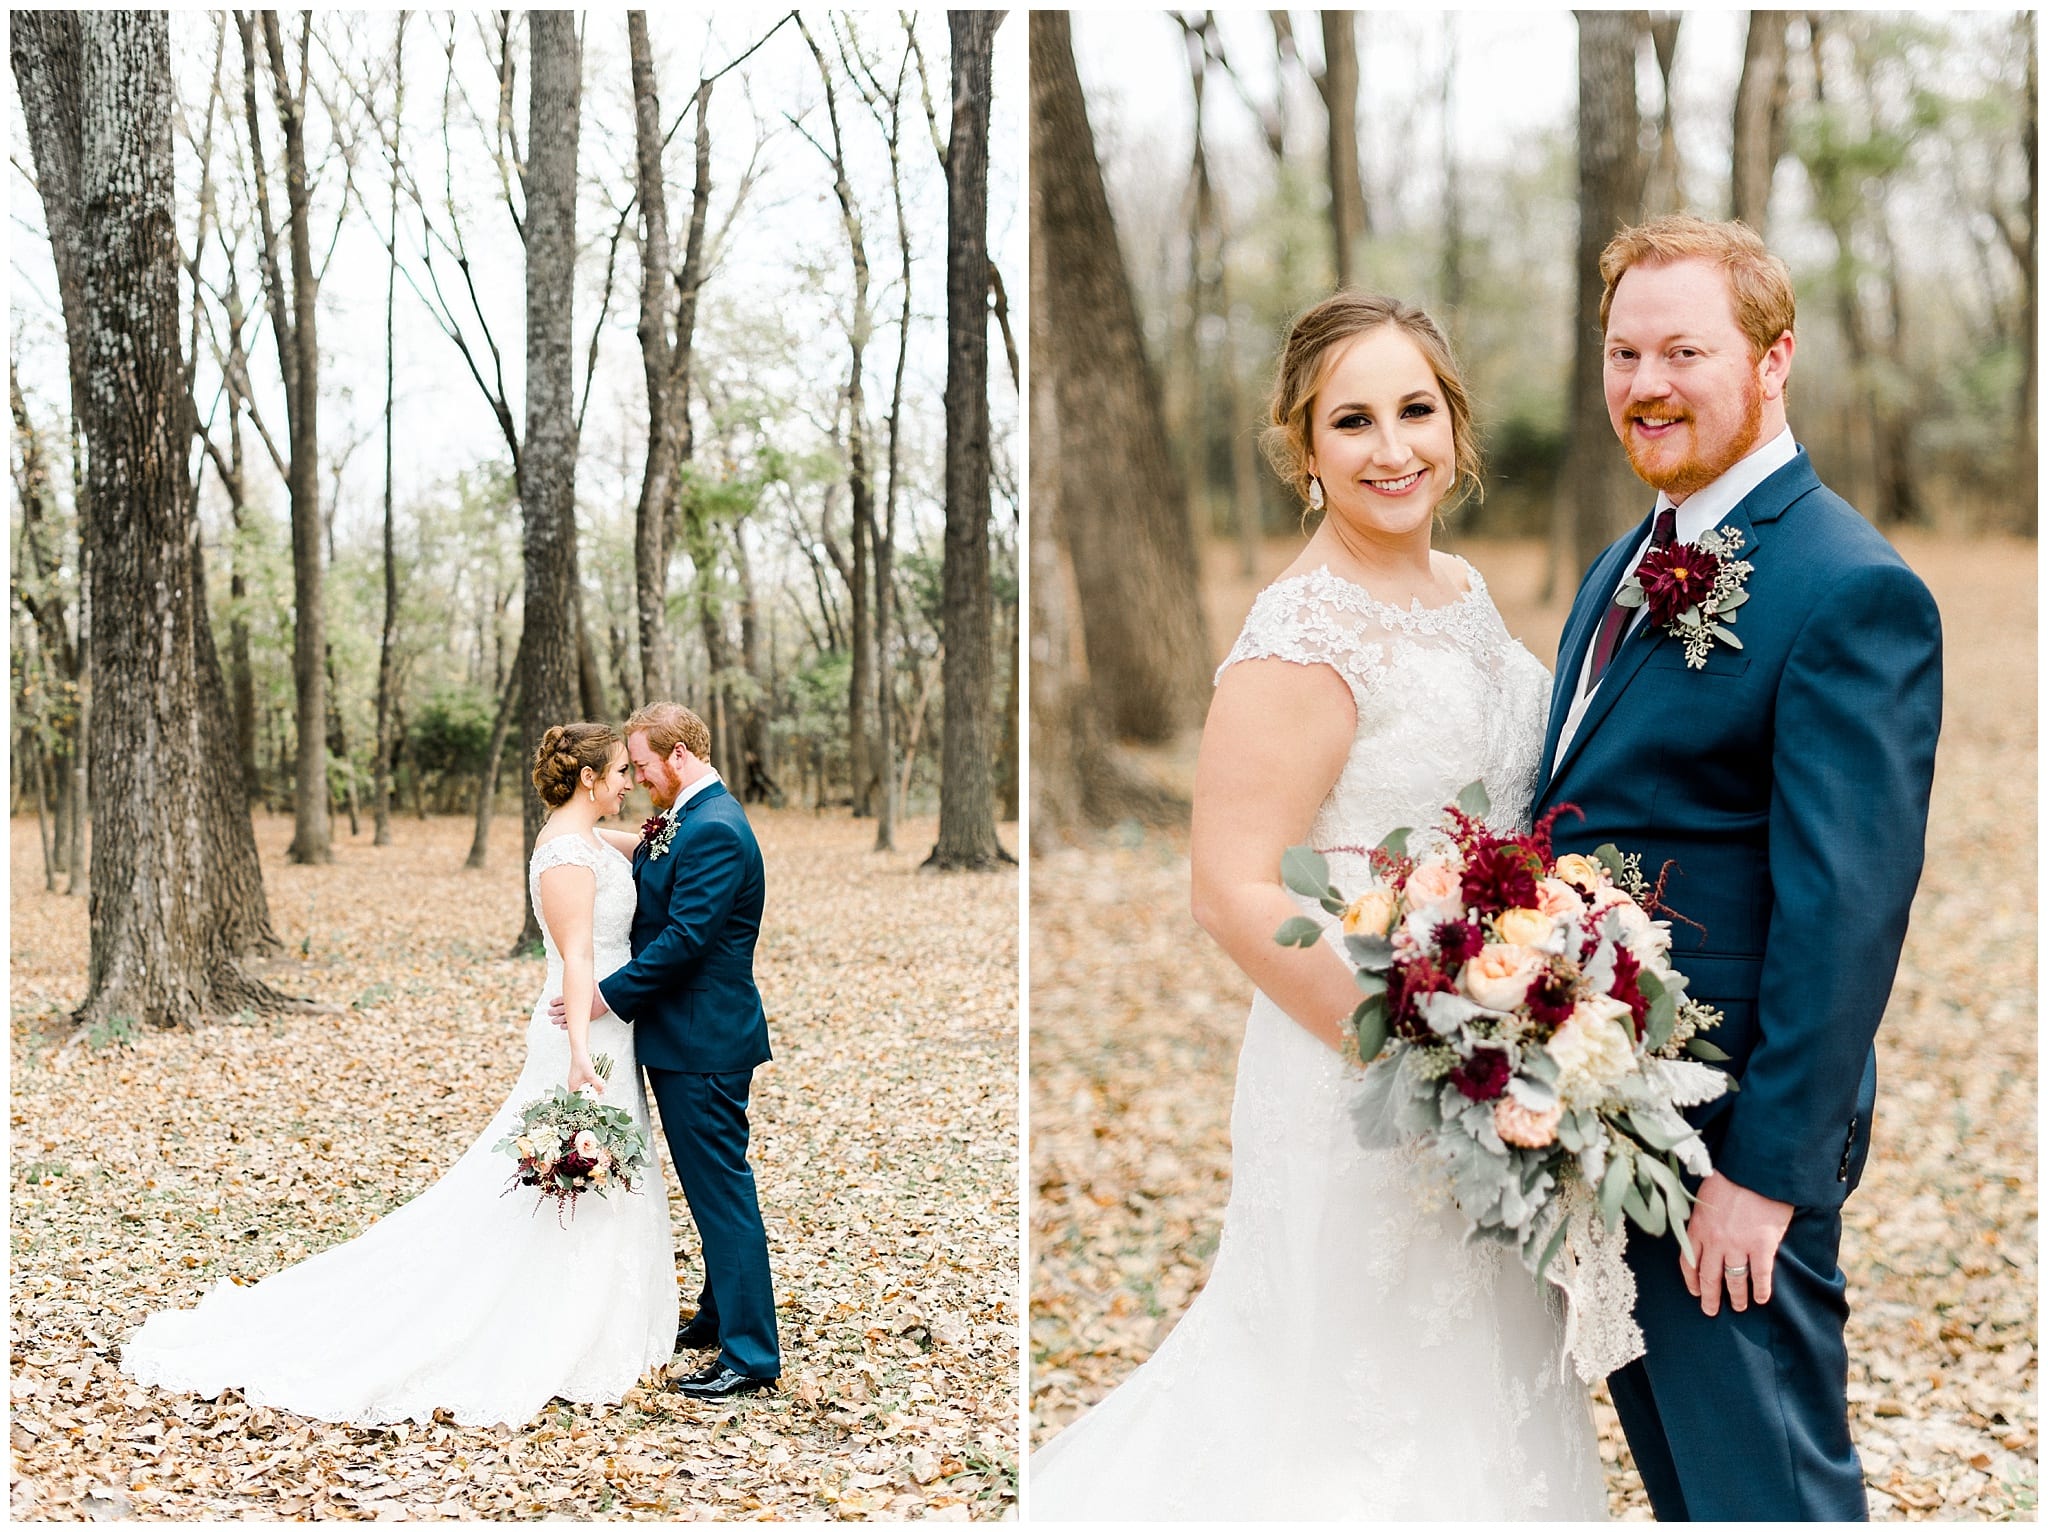 Jacob & Megan | Texas Wedding & Portrait Photographer